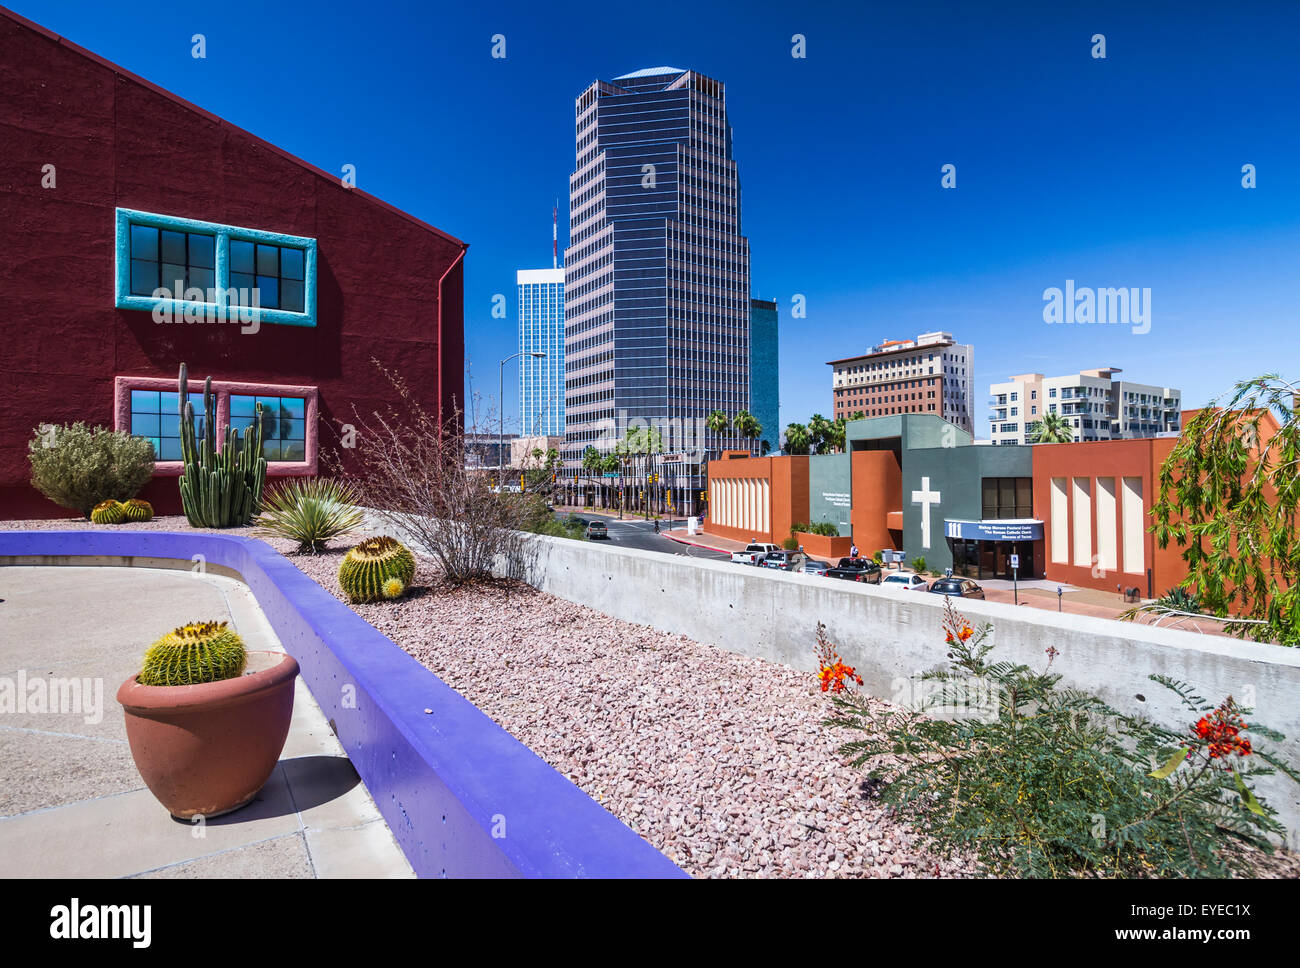 The colorful La Placita village office complex in downtown Tucson, Arizona, USA. Stock Photo